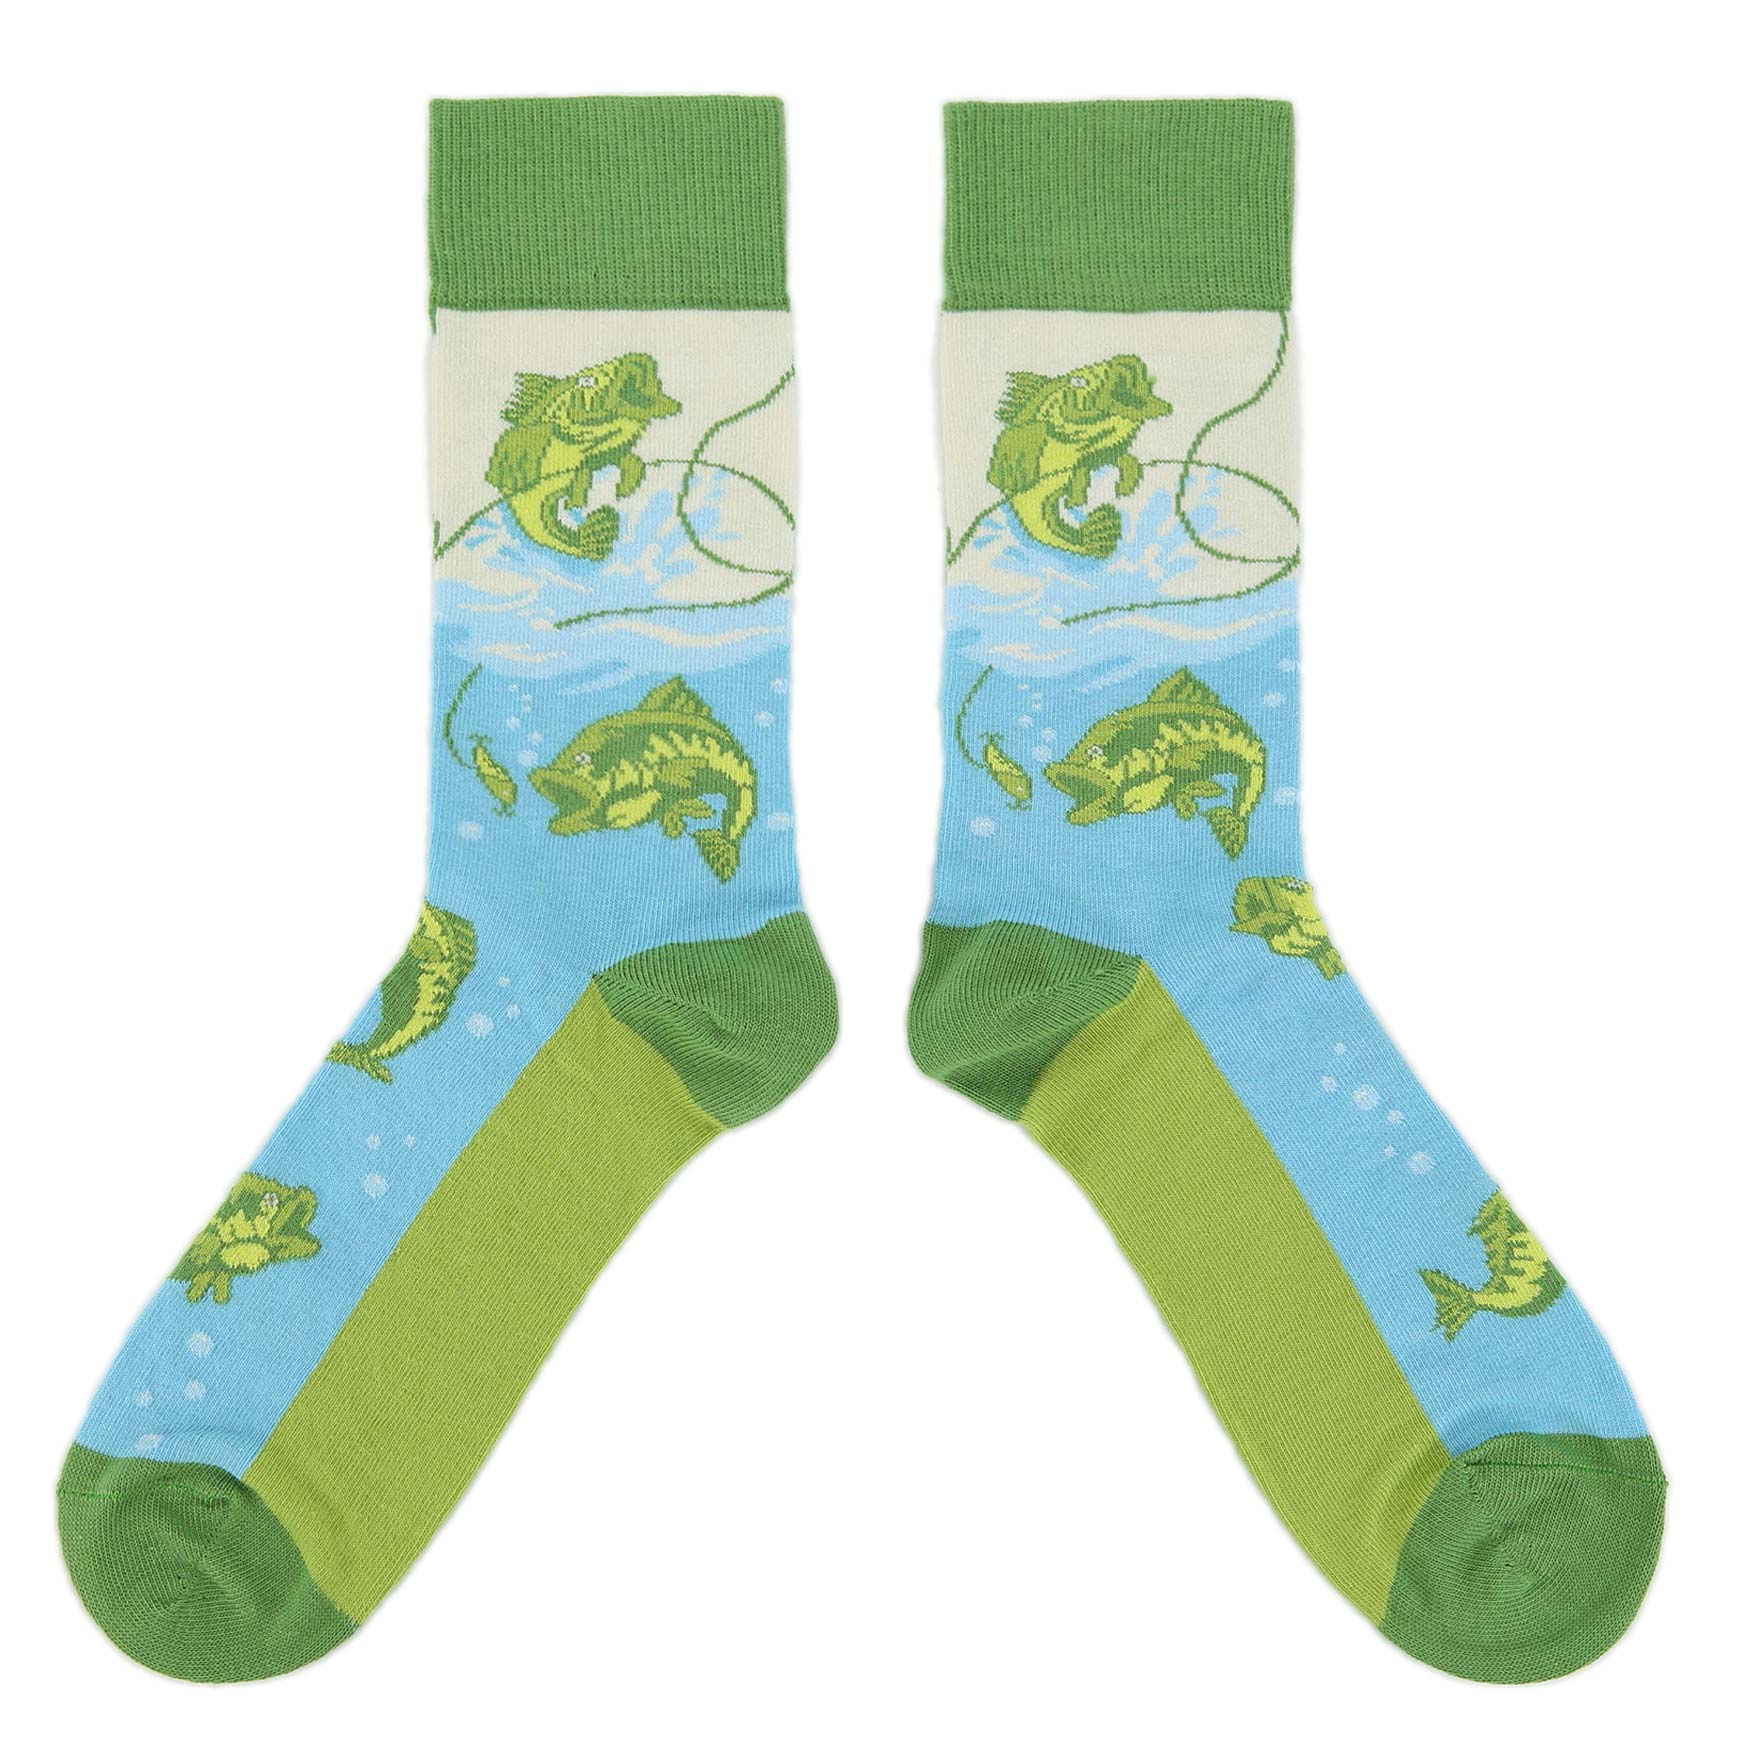 Fishing Socks - Men's Novelty Dress Socks U.S. Men's Shoe Sizes 13-16